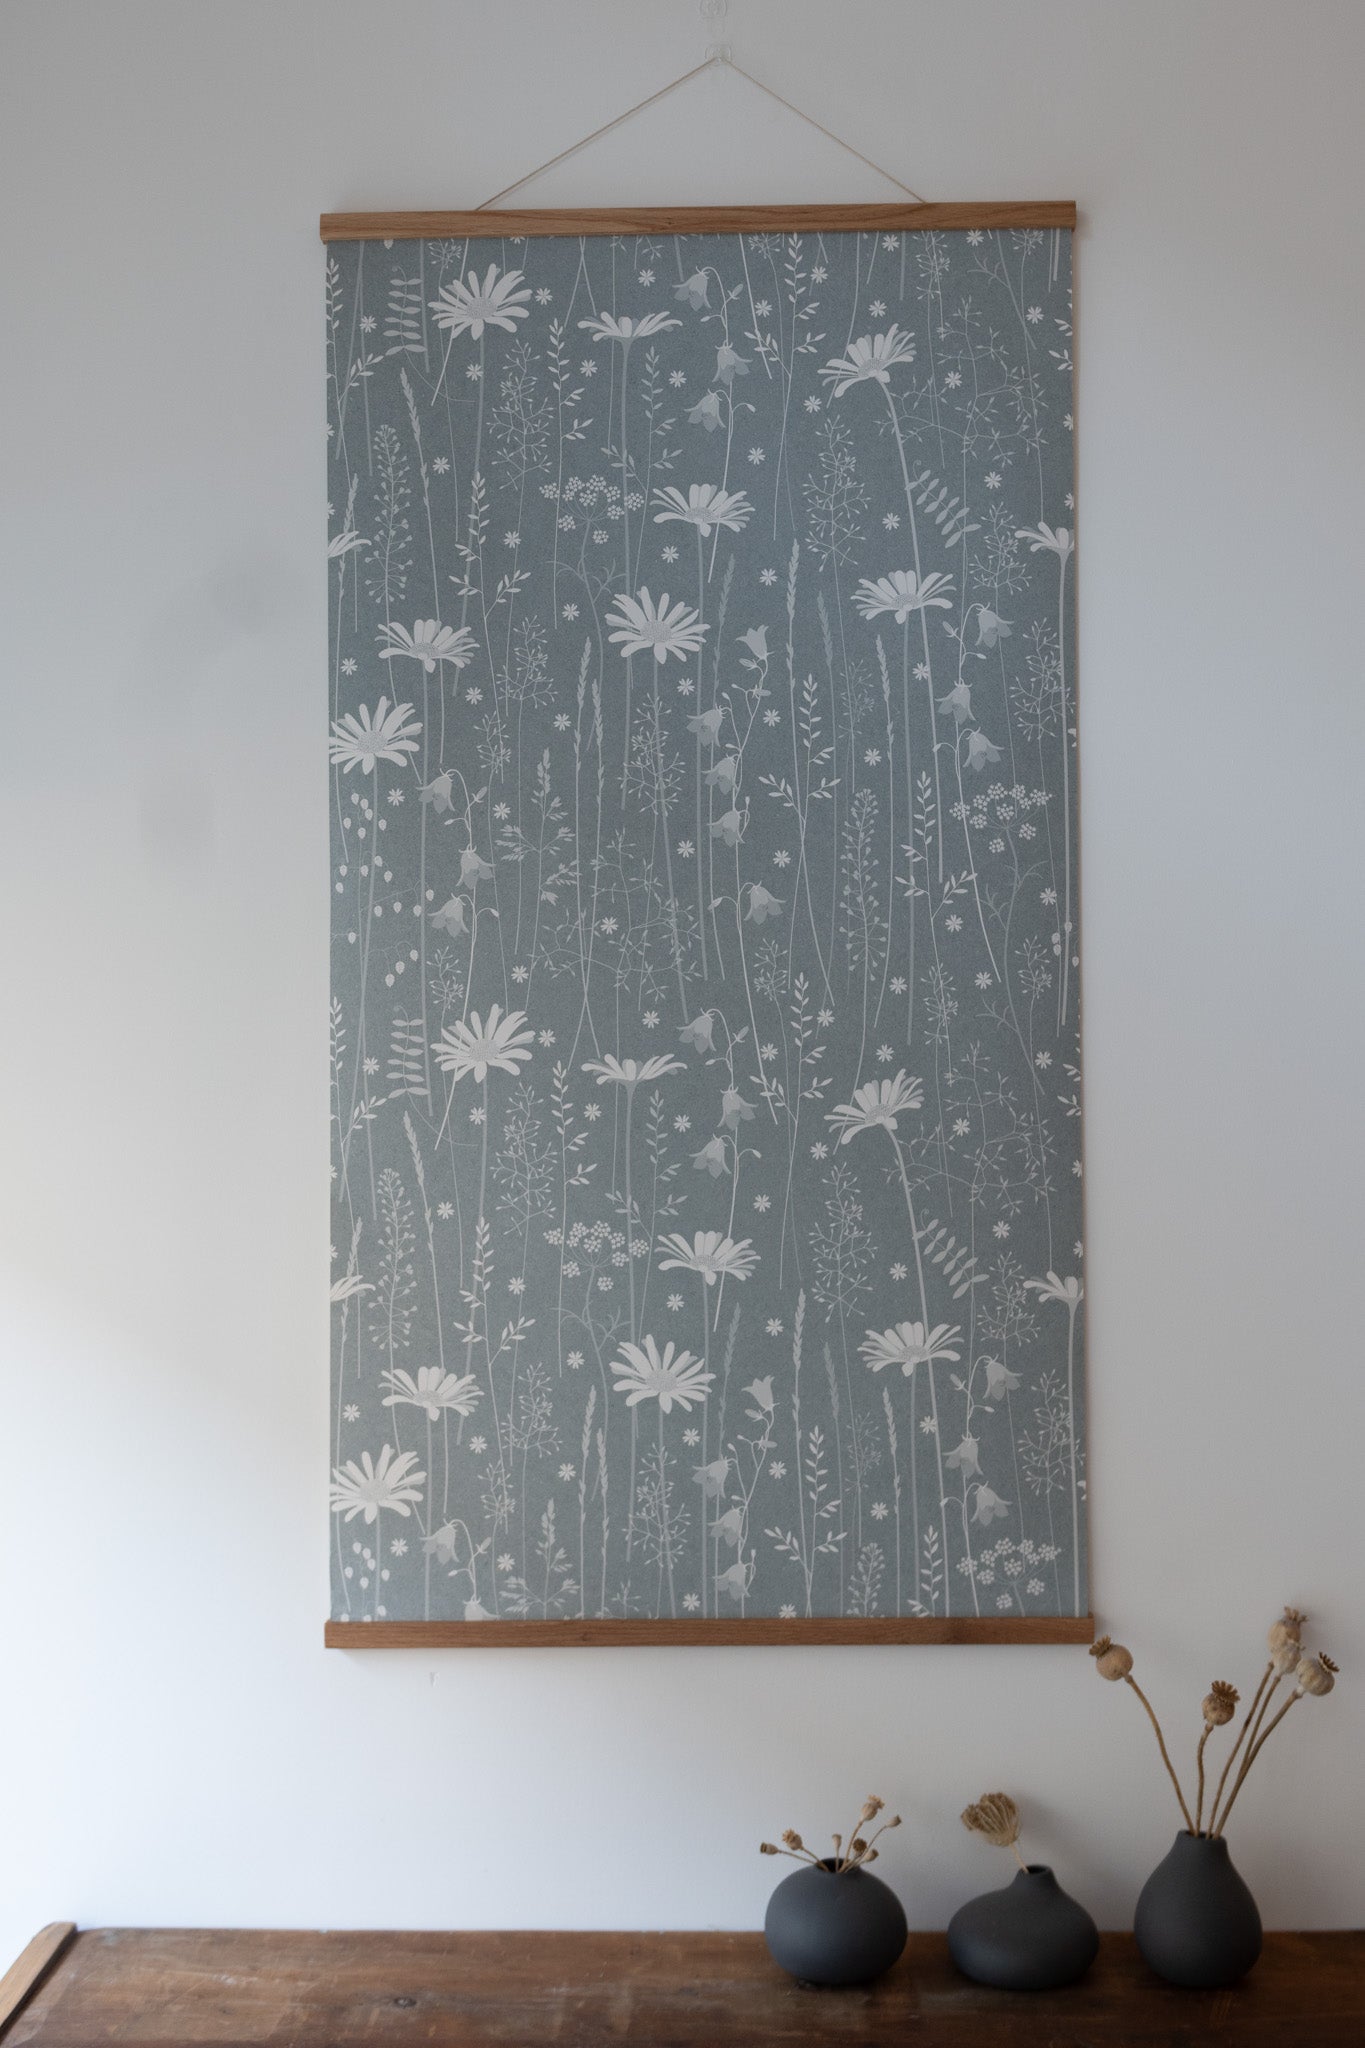 Daisy Meadow Wallpaper in Moonrise